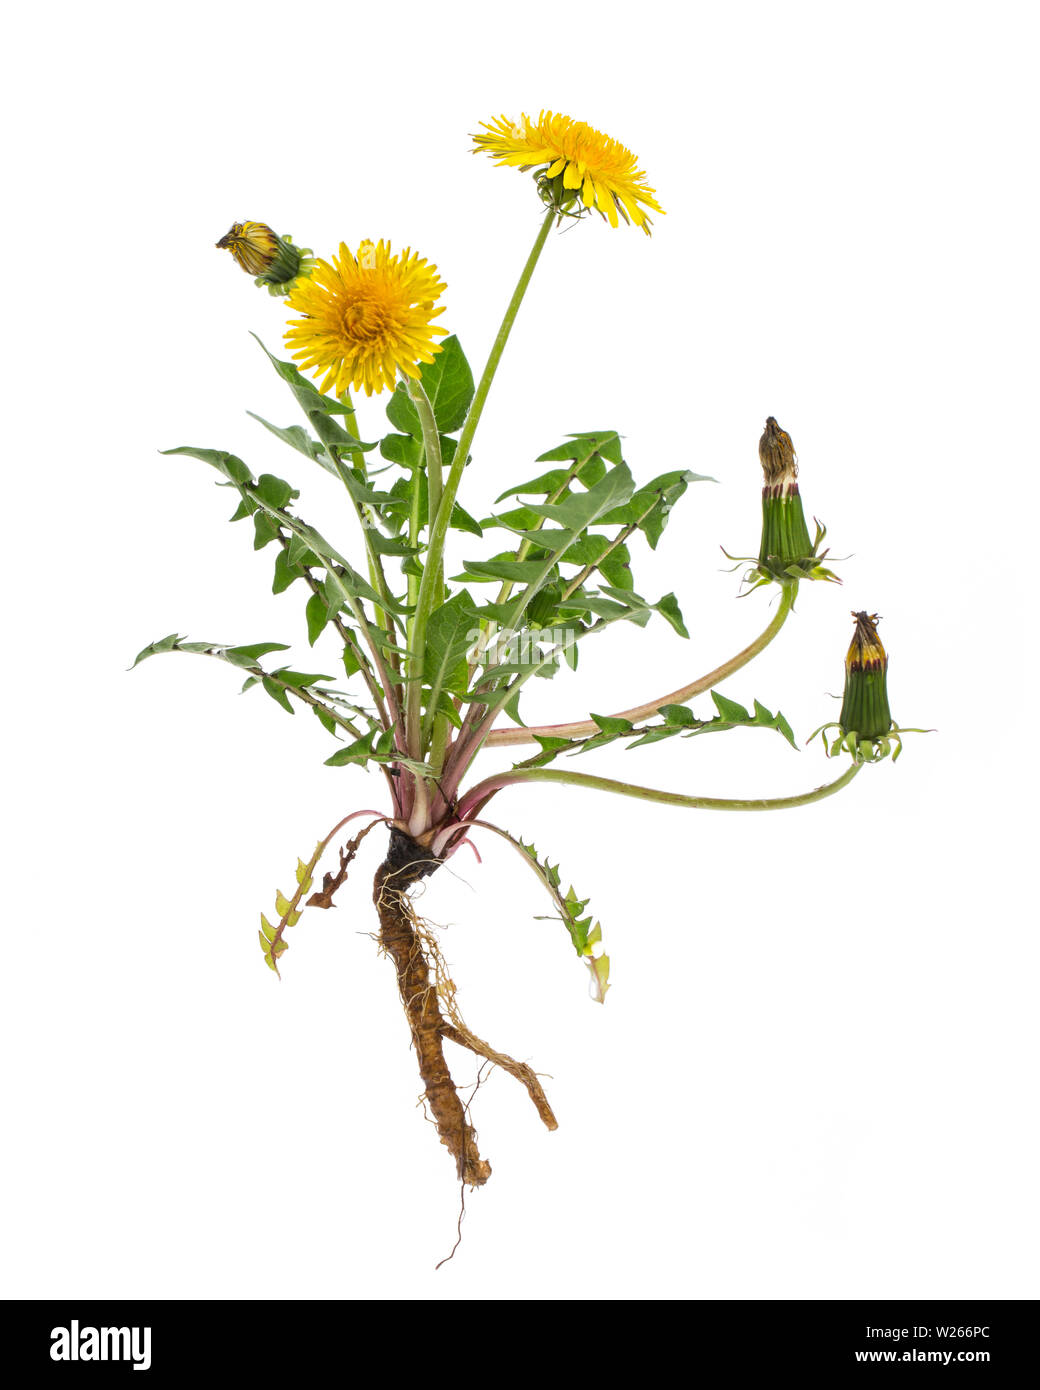 Healing / Plantas medicinales: Diente de león (Taraxacum officinale) - planta entera sobre fondo blanco. Foto de stock